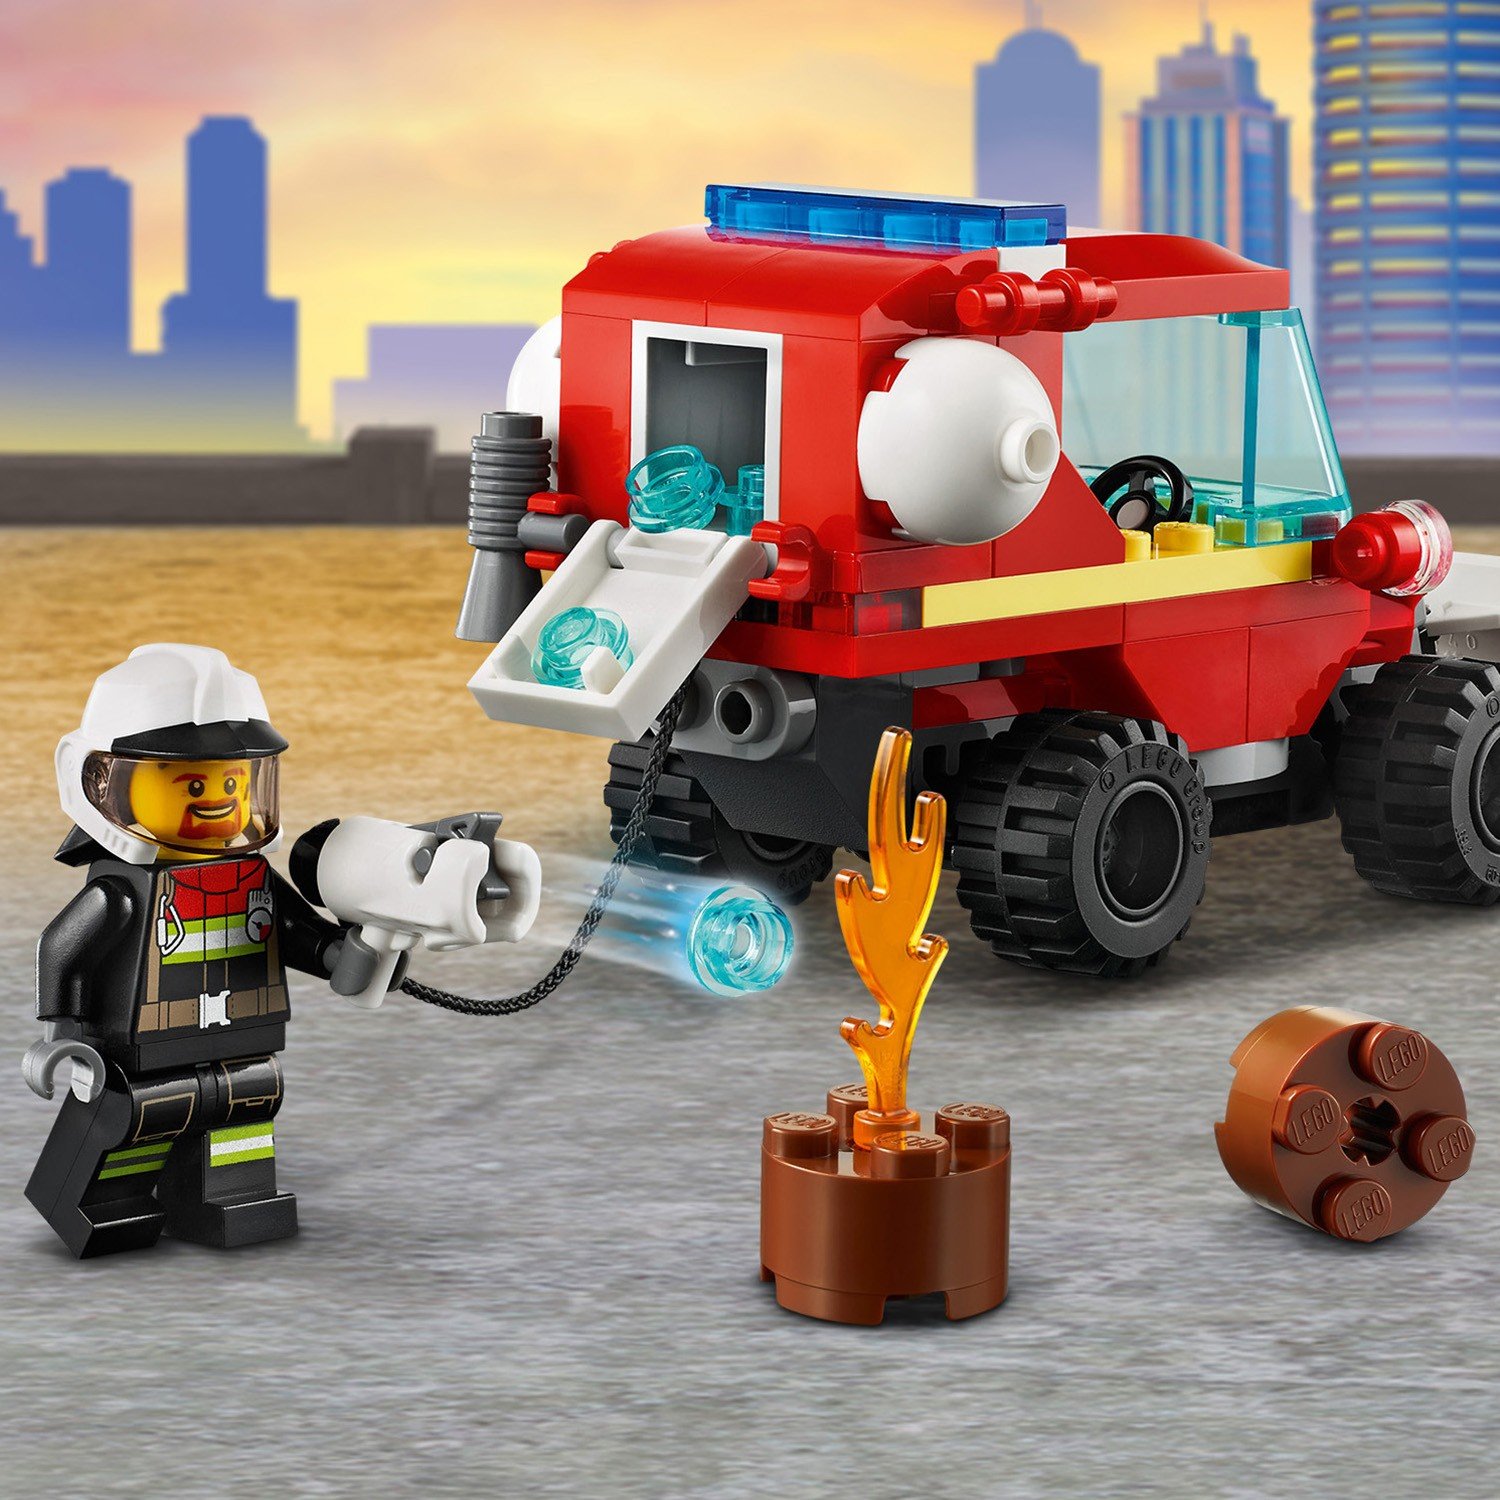 Lego City 60279 Пожарный автомобиль